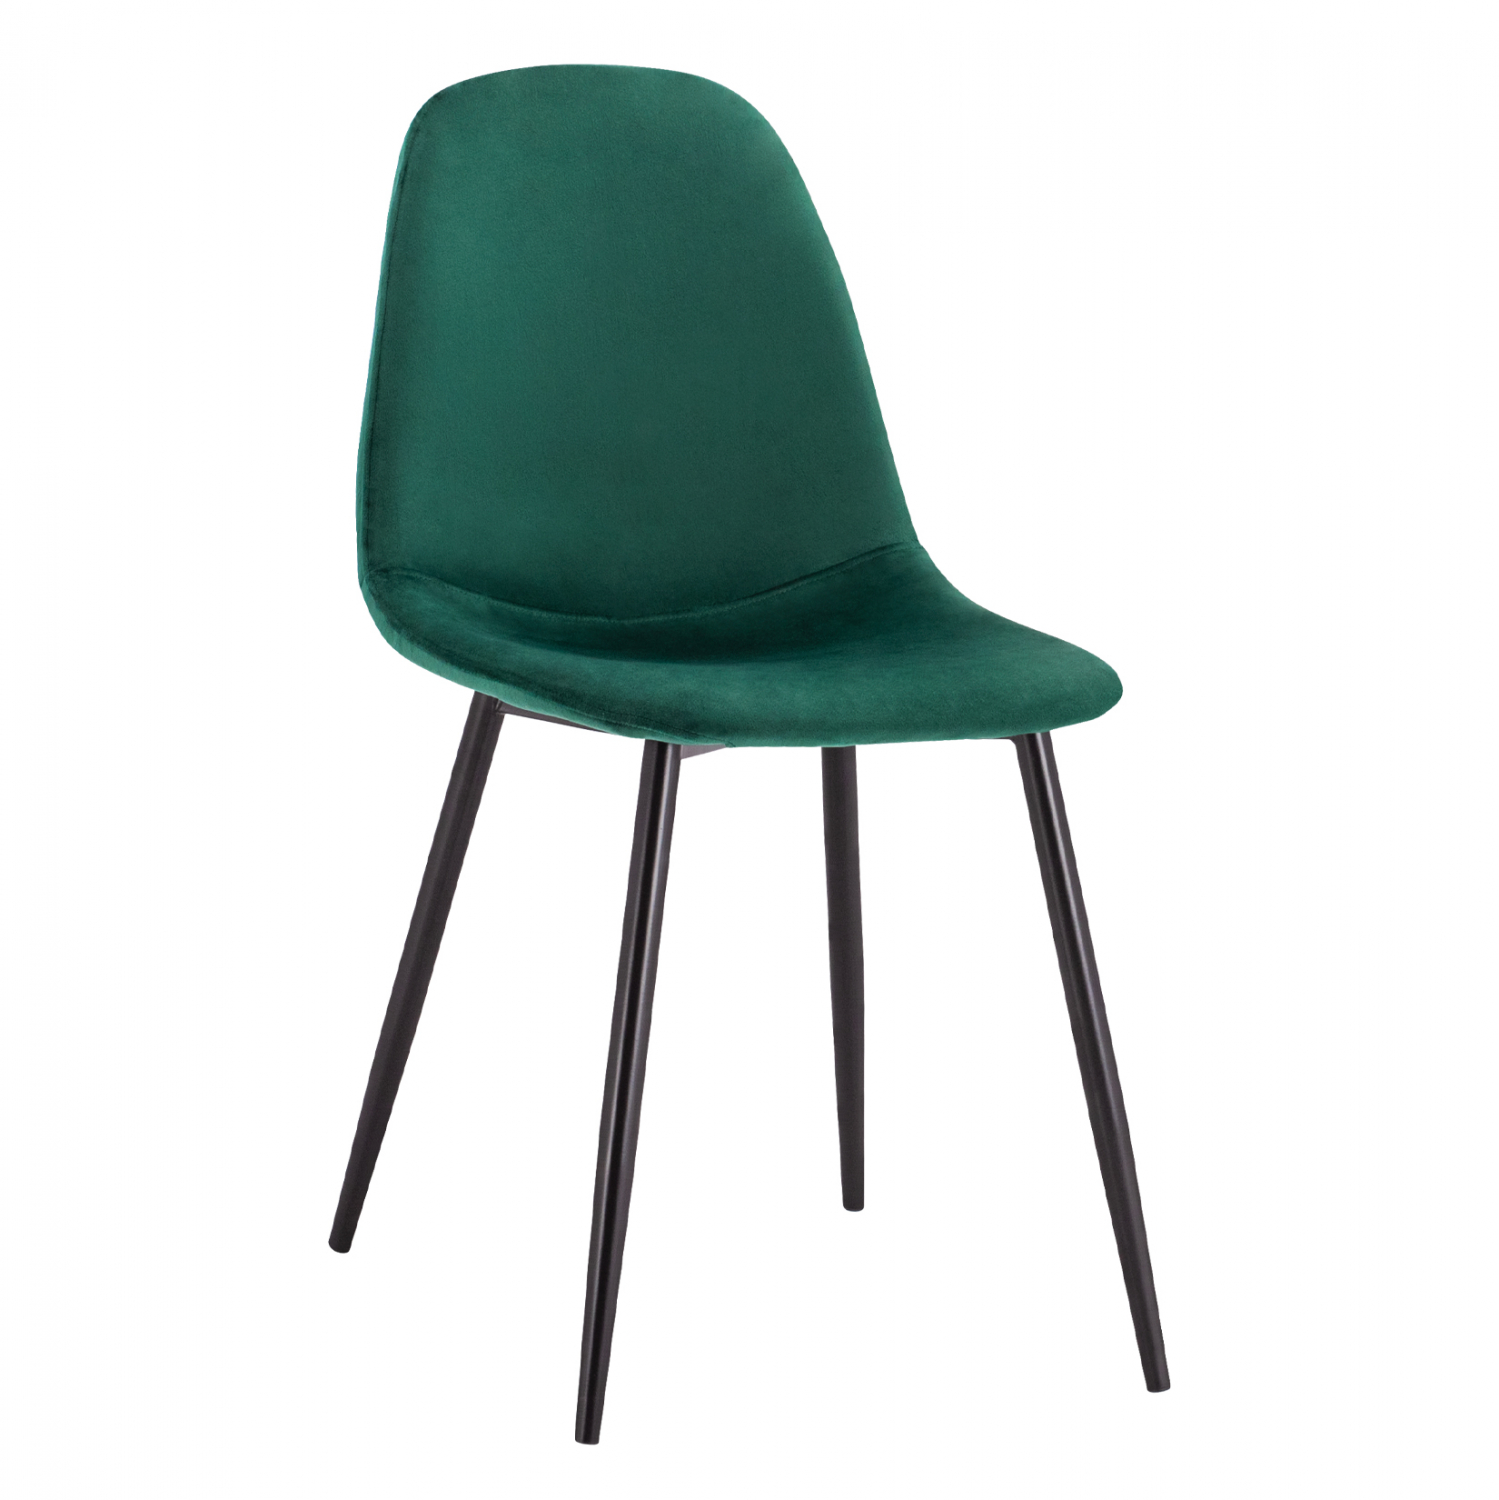 Καρέκλα “LEONARDO” από βελούδο/μέταλλο σε κυπαρισσί/μαύρο χρώμα 45x53x85